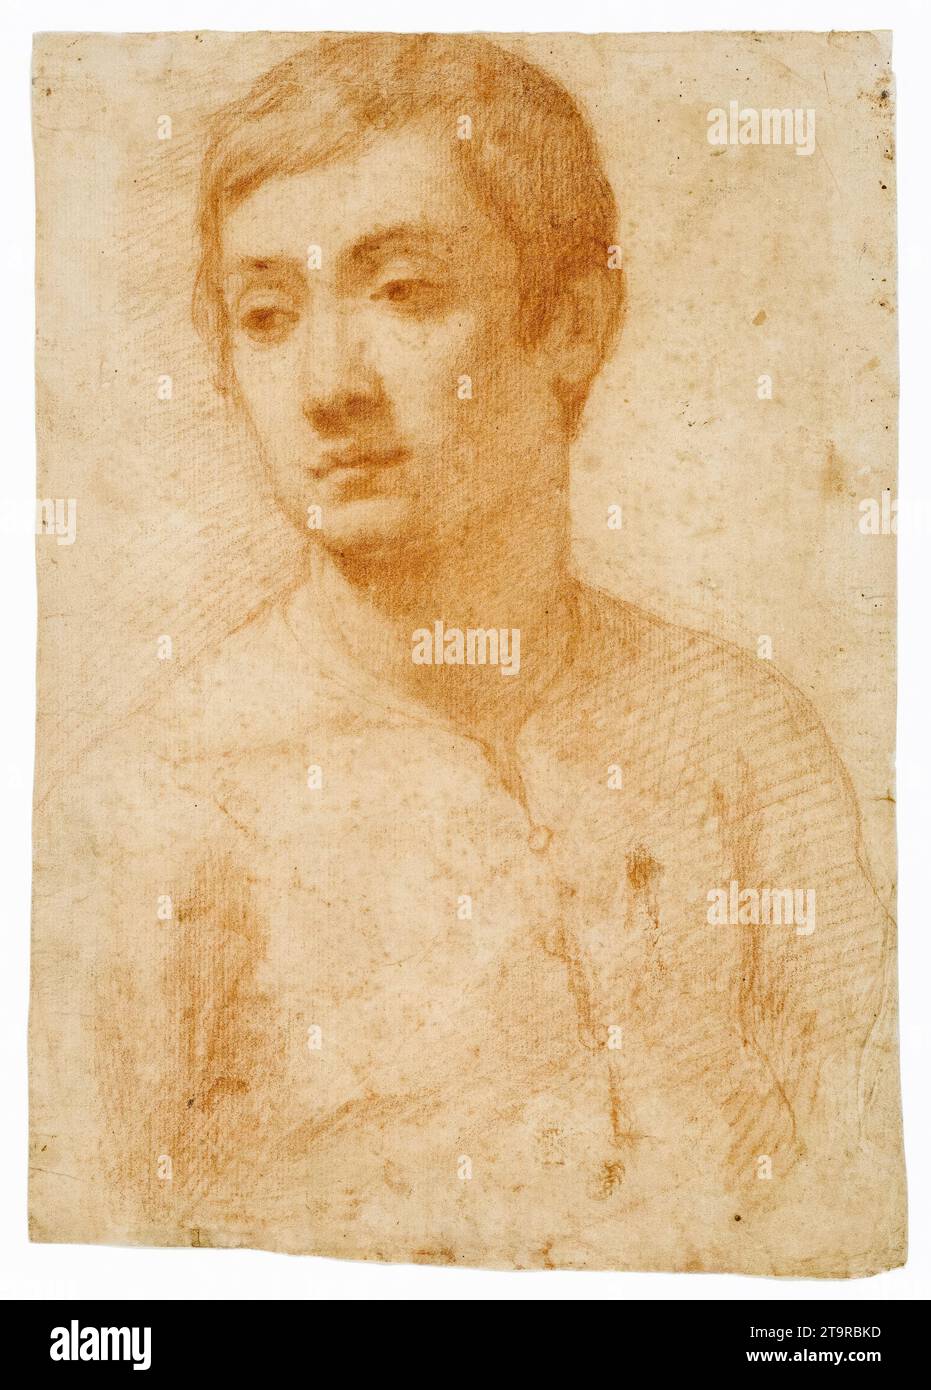 Domenico Passignano, la tête d'une jeunesse, portrait en sang sur papier couché, 1600-1625 Banque D'Images